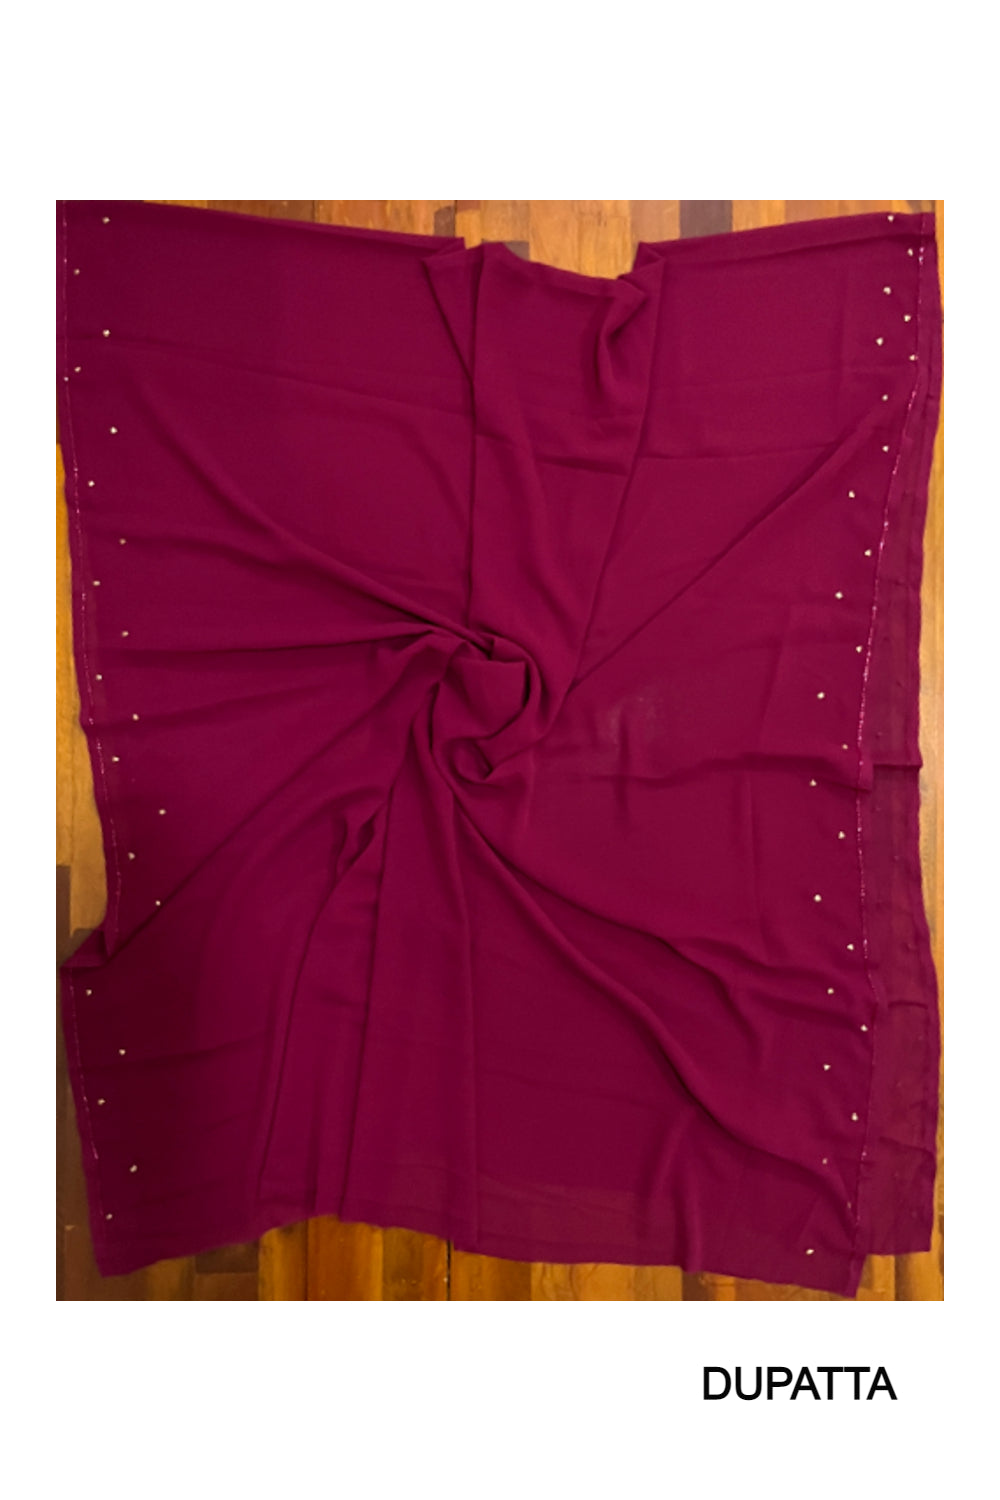 Southloom™ Georgette Churidar Salwar Suit Material in Maroon with Bead Works